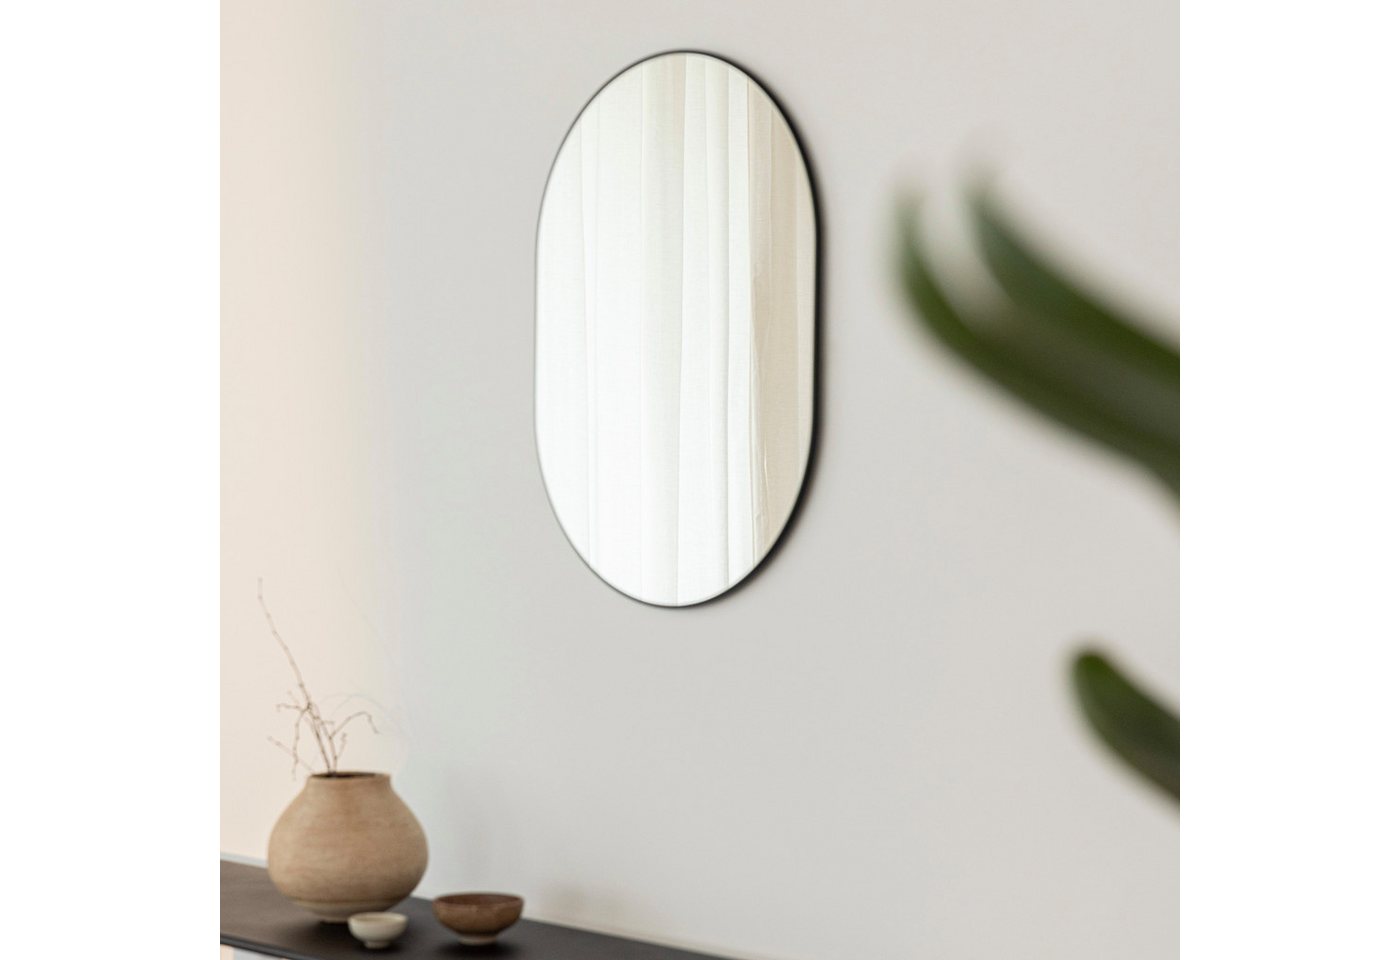 Metallbude Wandspiegel CAYA, oval, minimalistisches Design, 57 x 41 cm von Metallbude